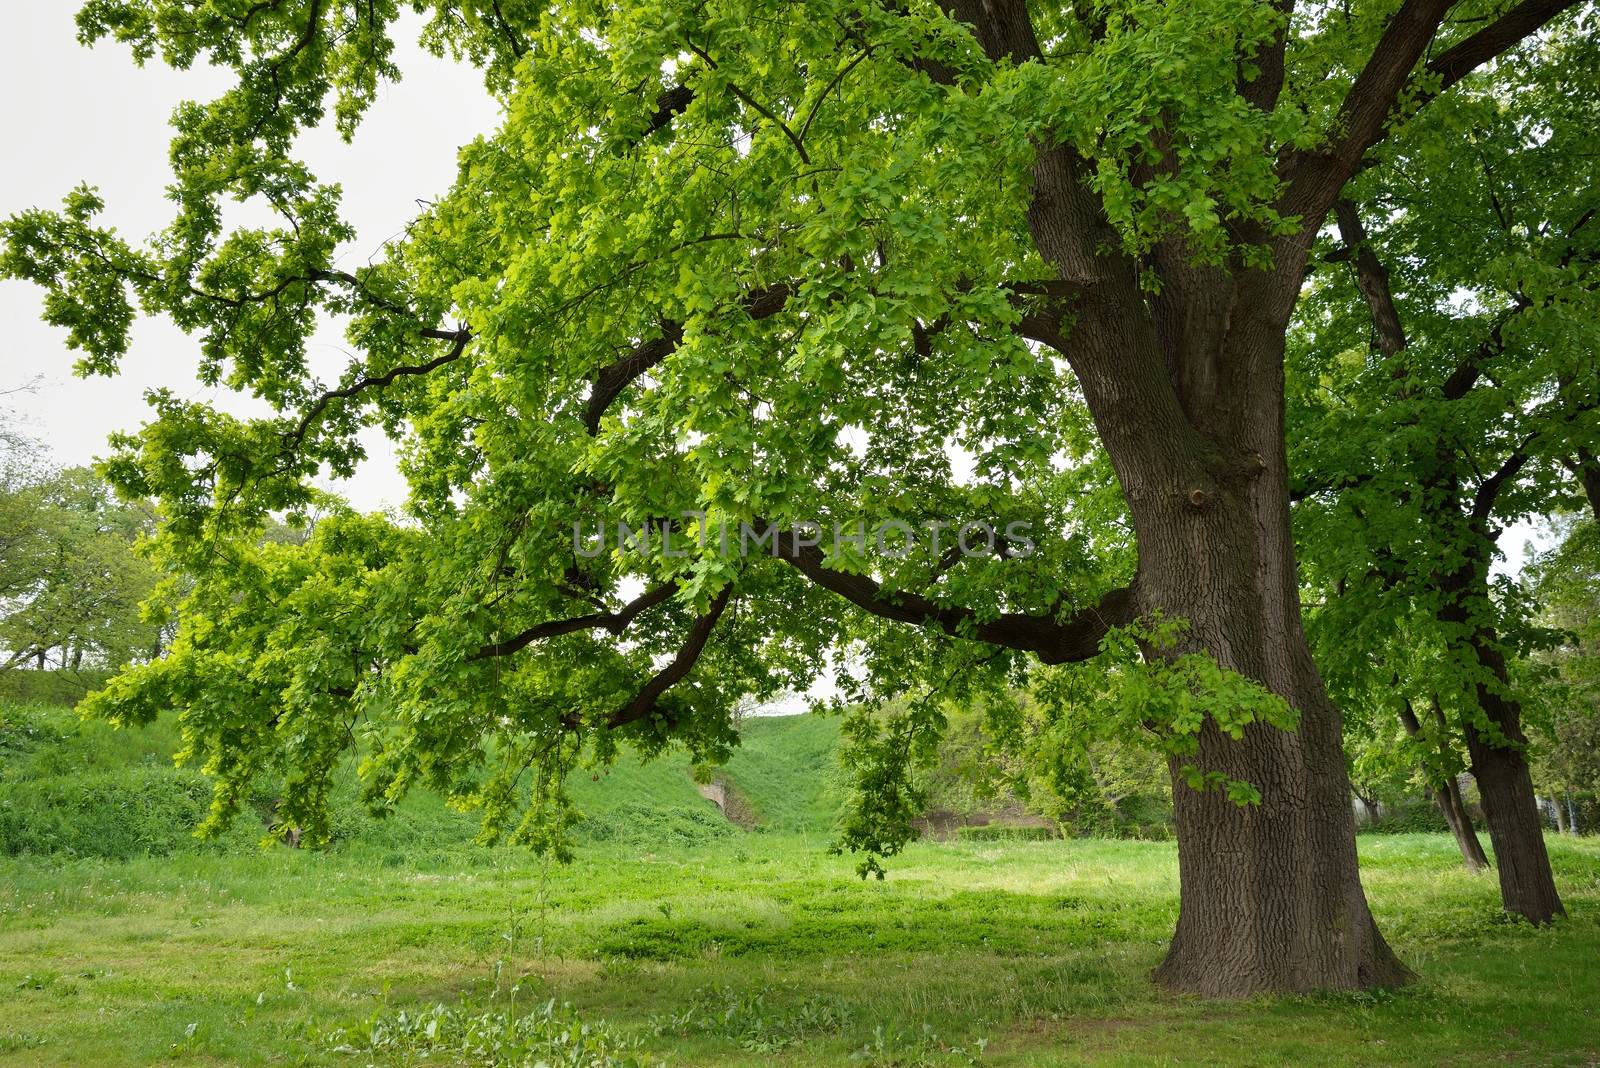 Oak Tree in Park by zagart36